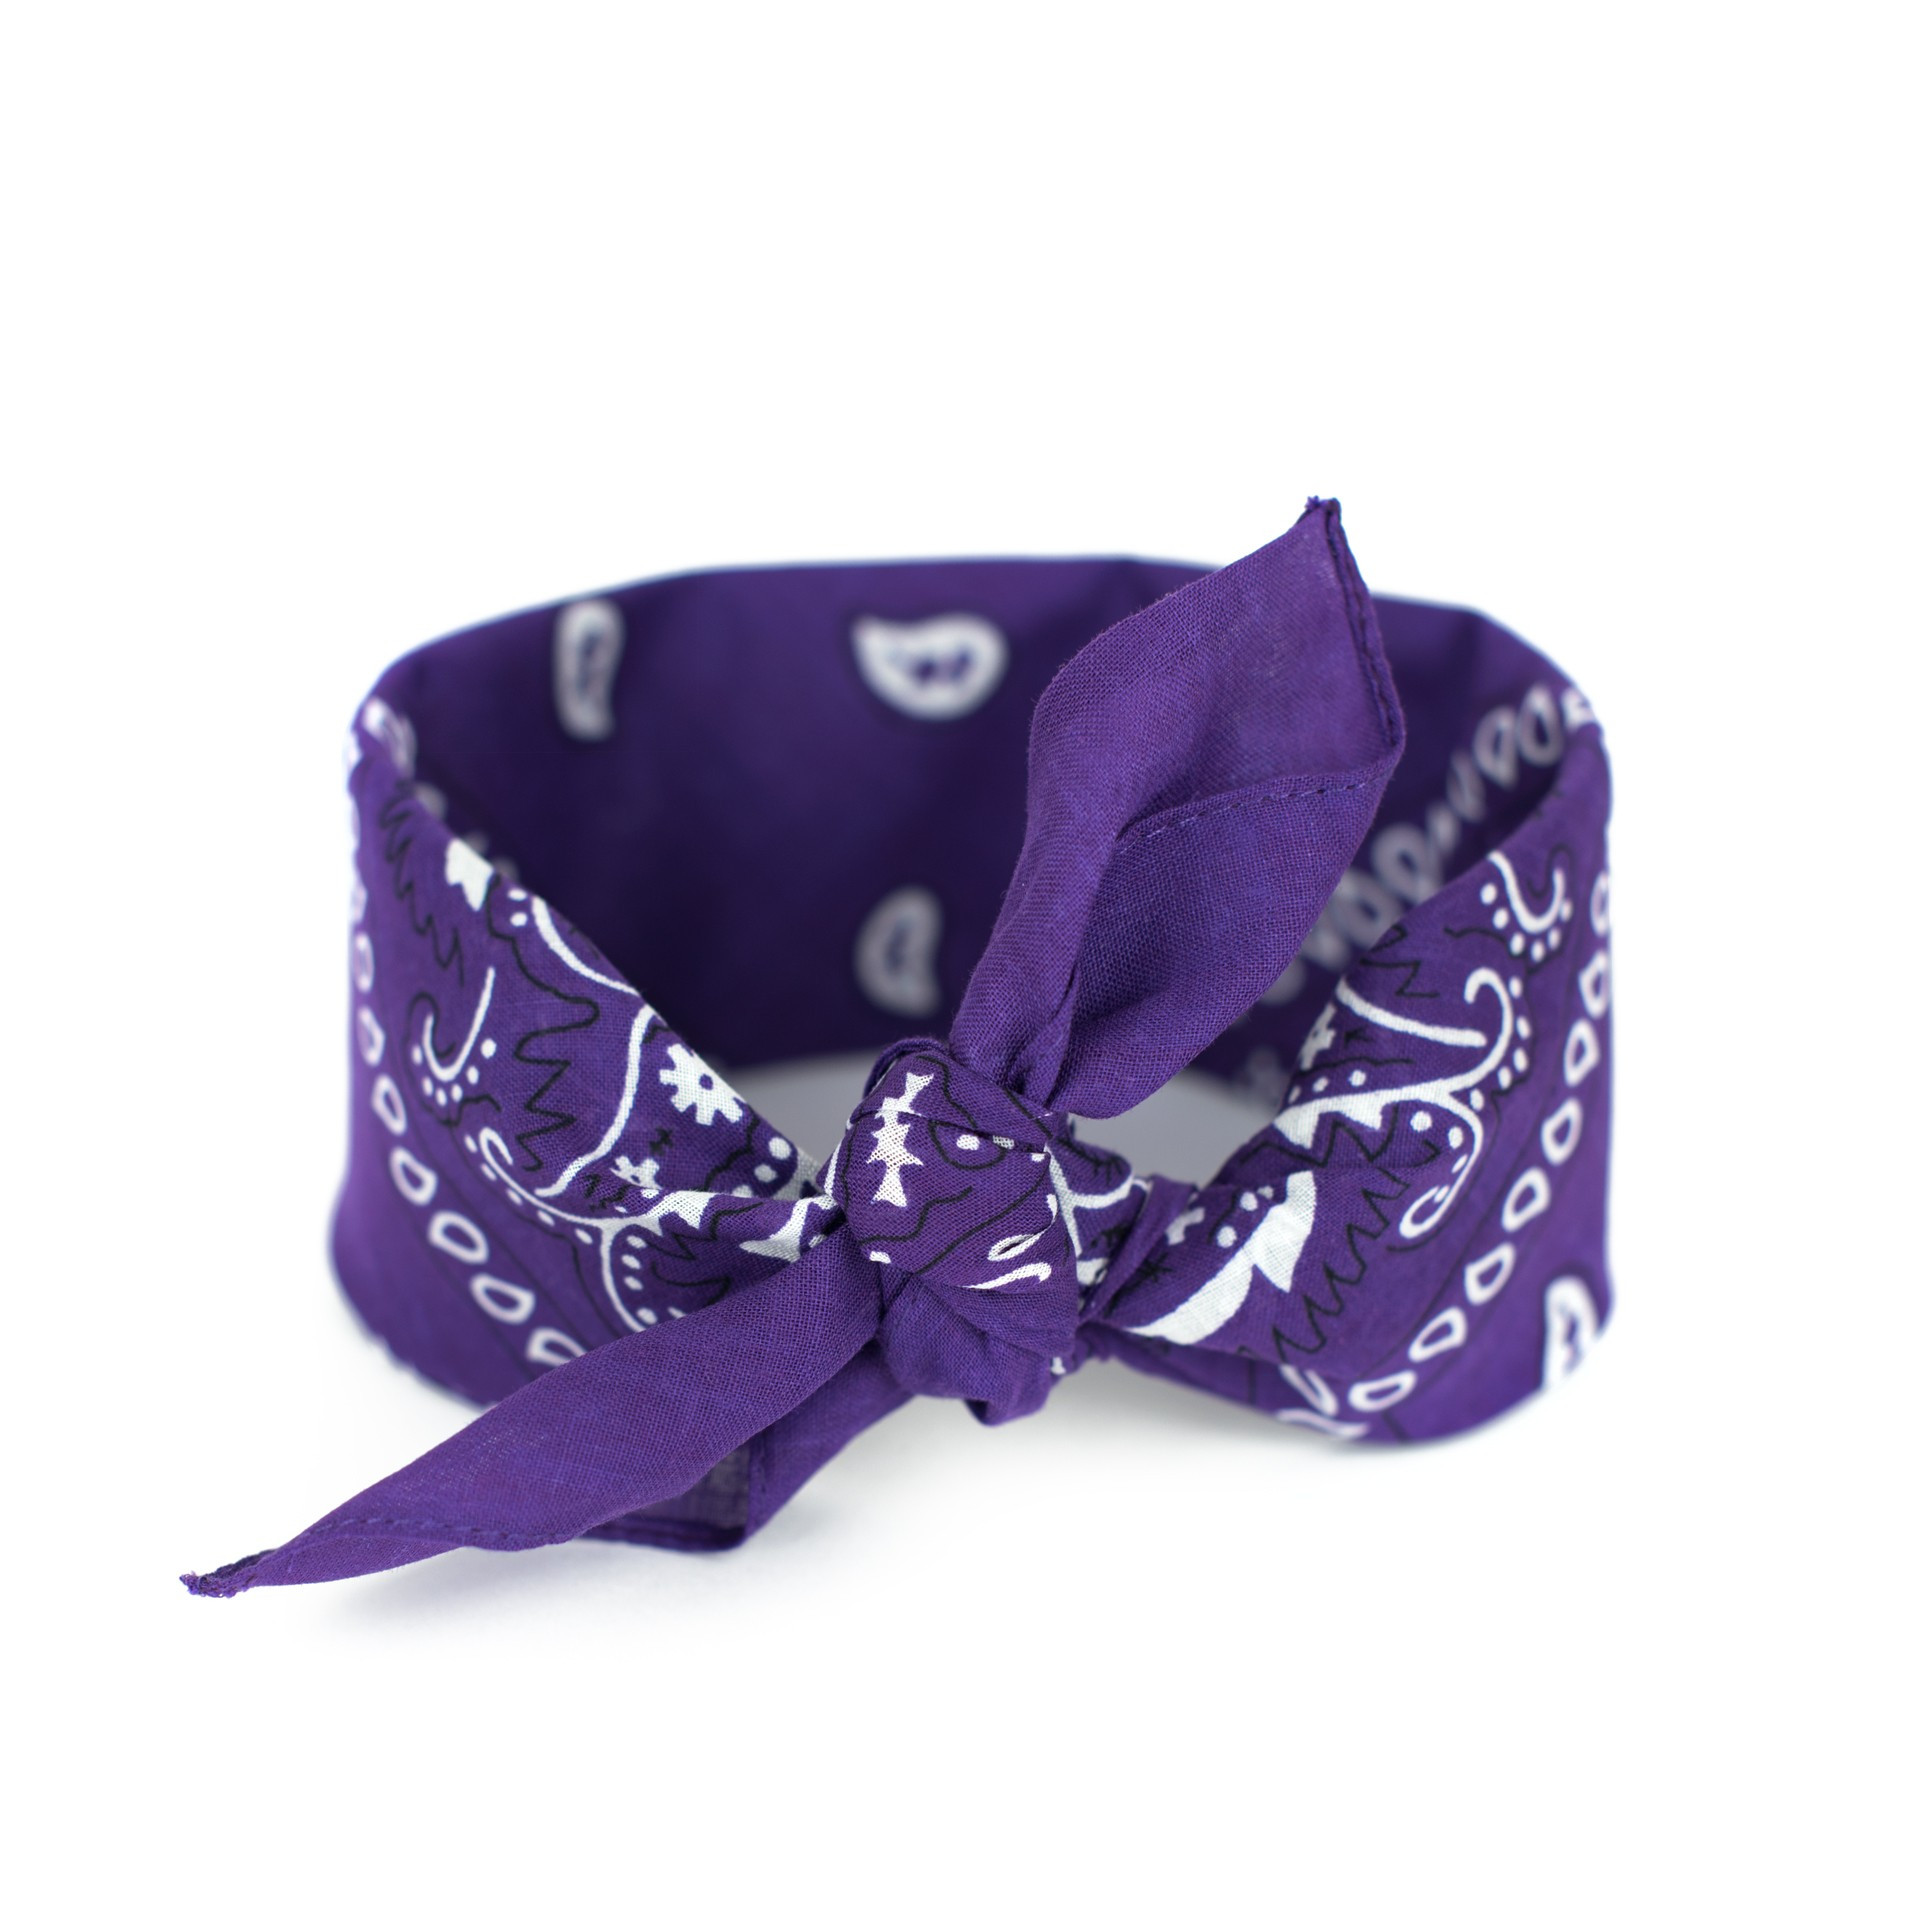 Šátek Sz13014 Violet - Art Of Polo one size